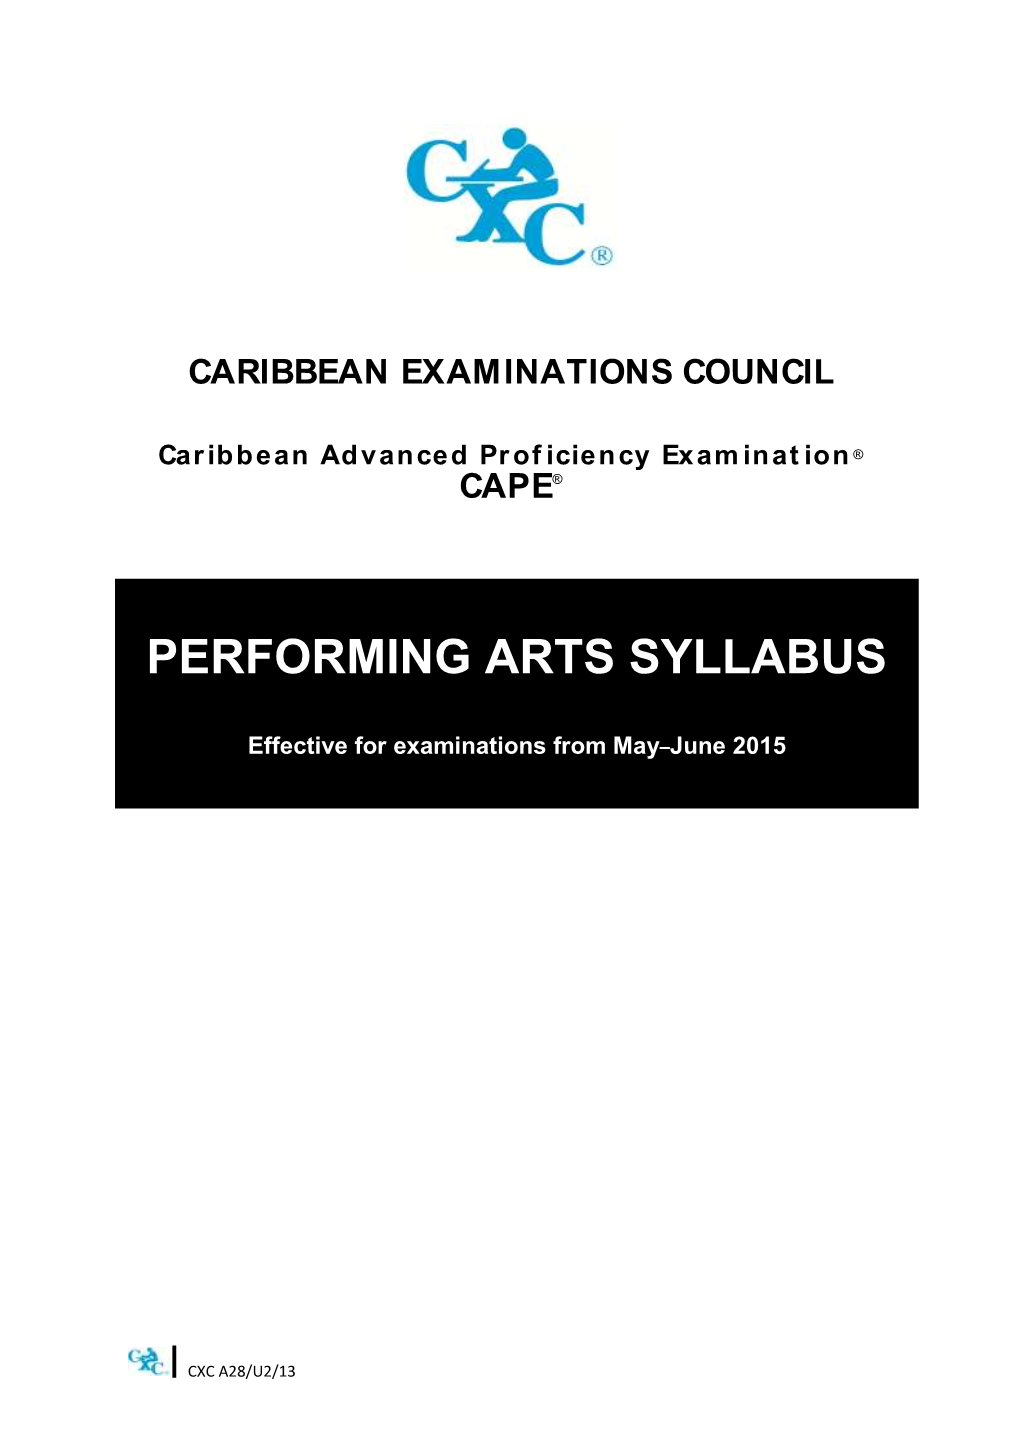 Performing Arts Syllabus